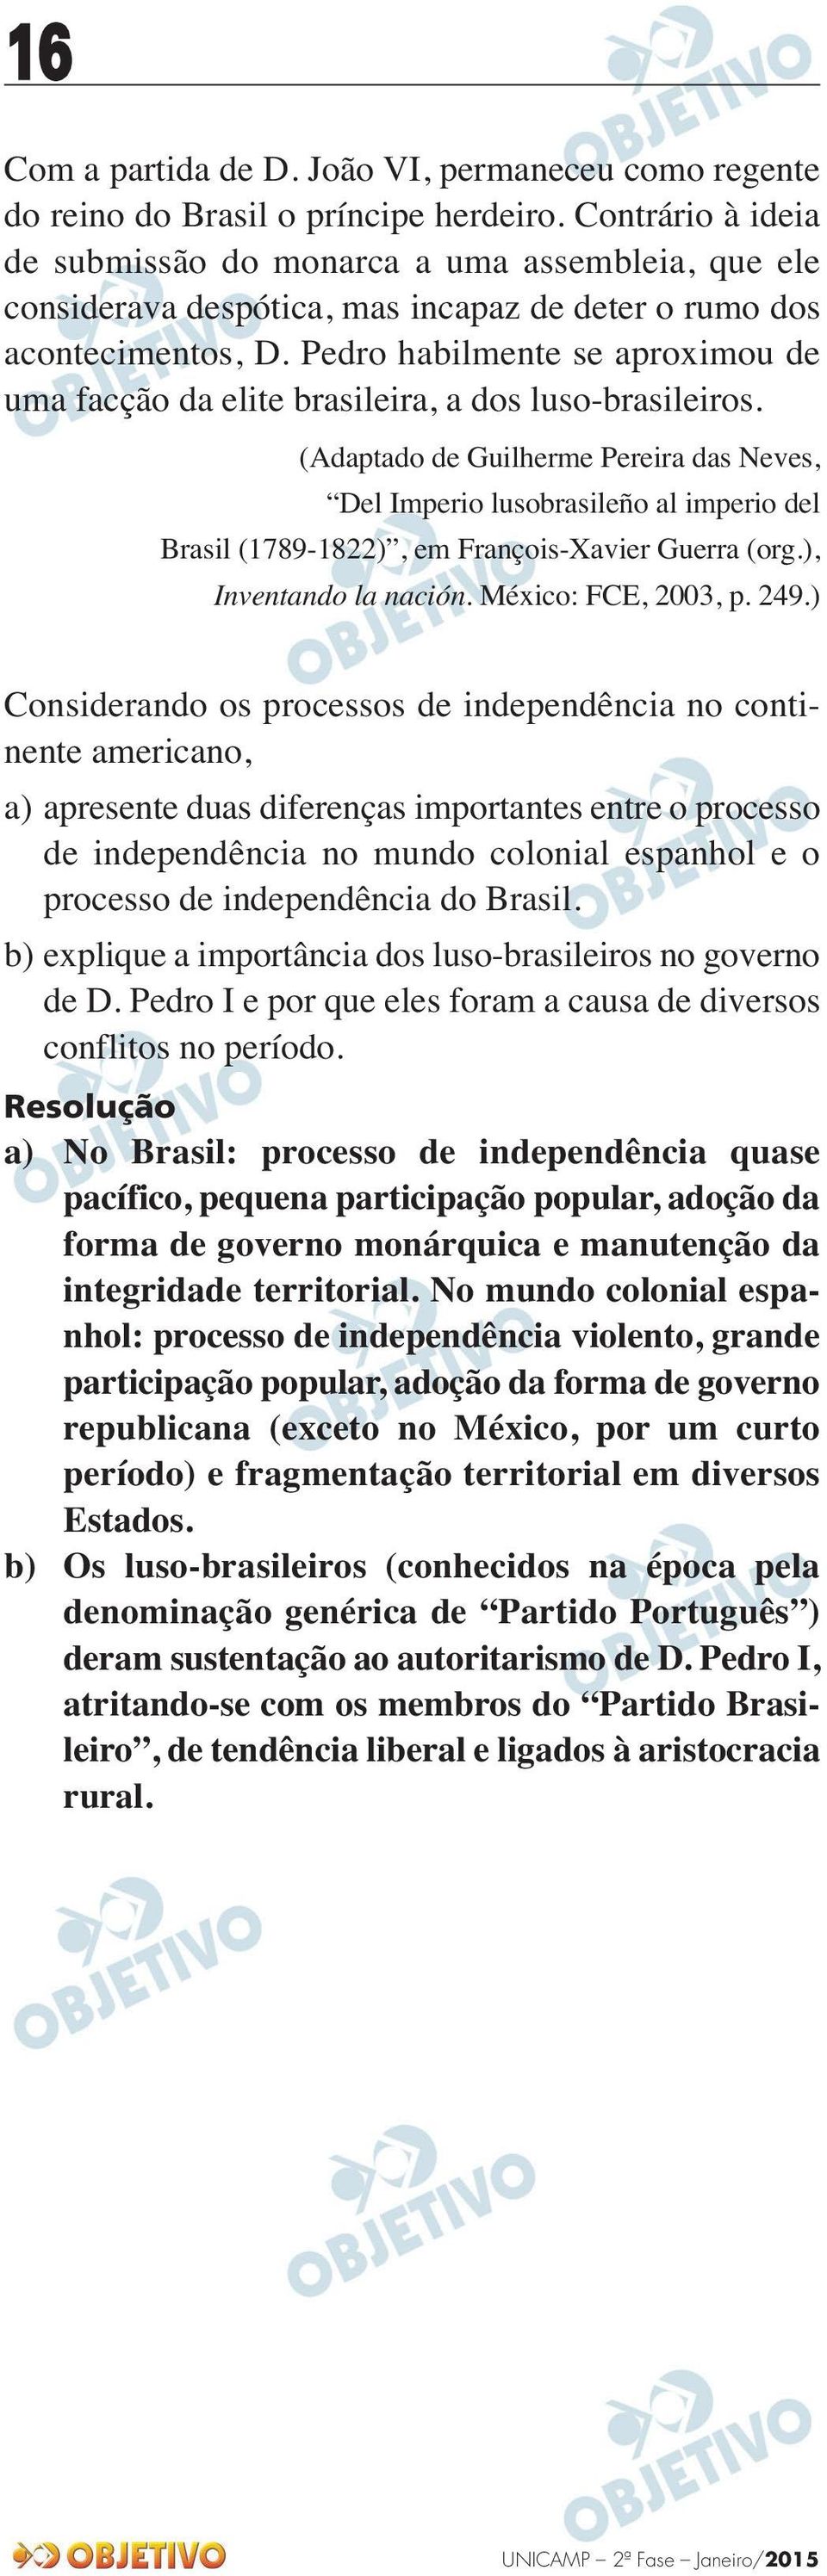 Pedro habilmente se aproximou de uma facção da elite brasileira, a dos luso-brasileiros.